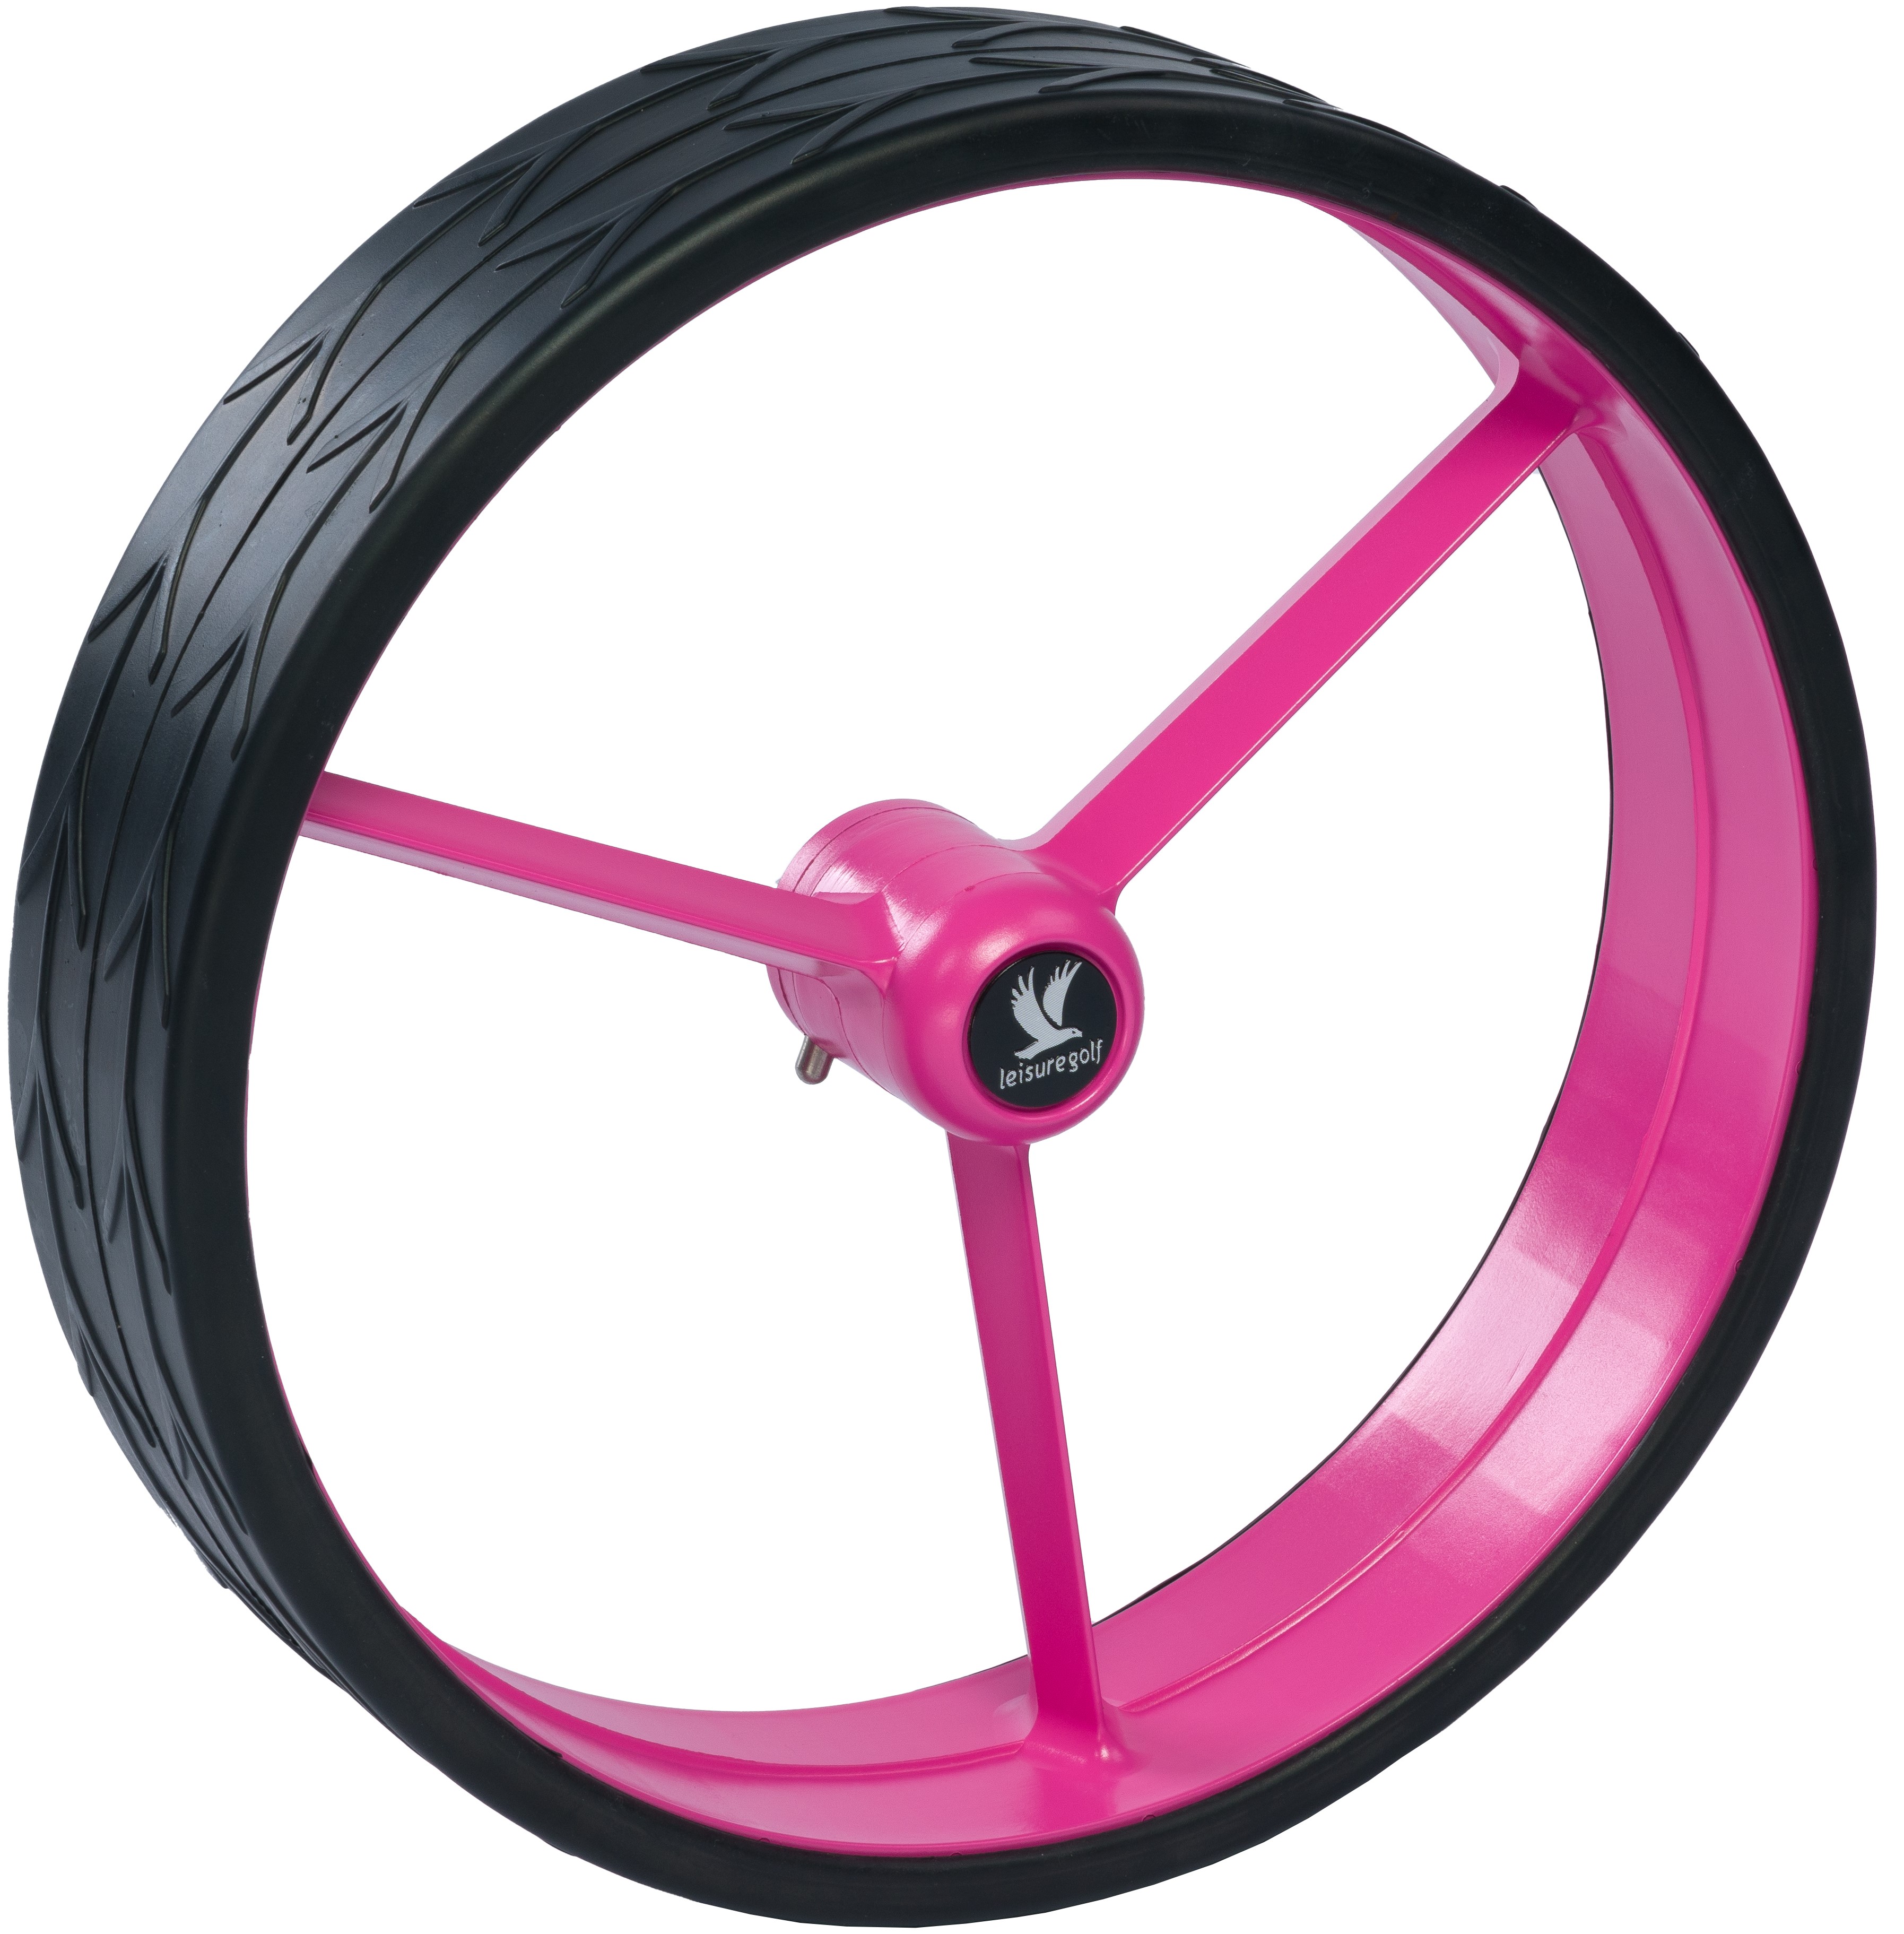 Wheel set pink